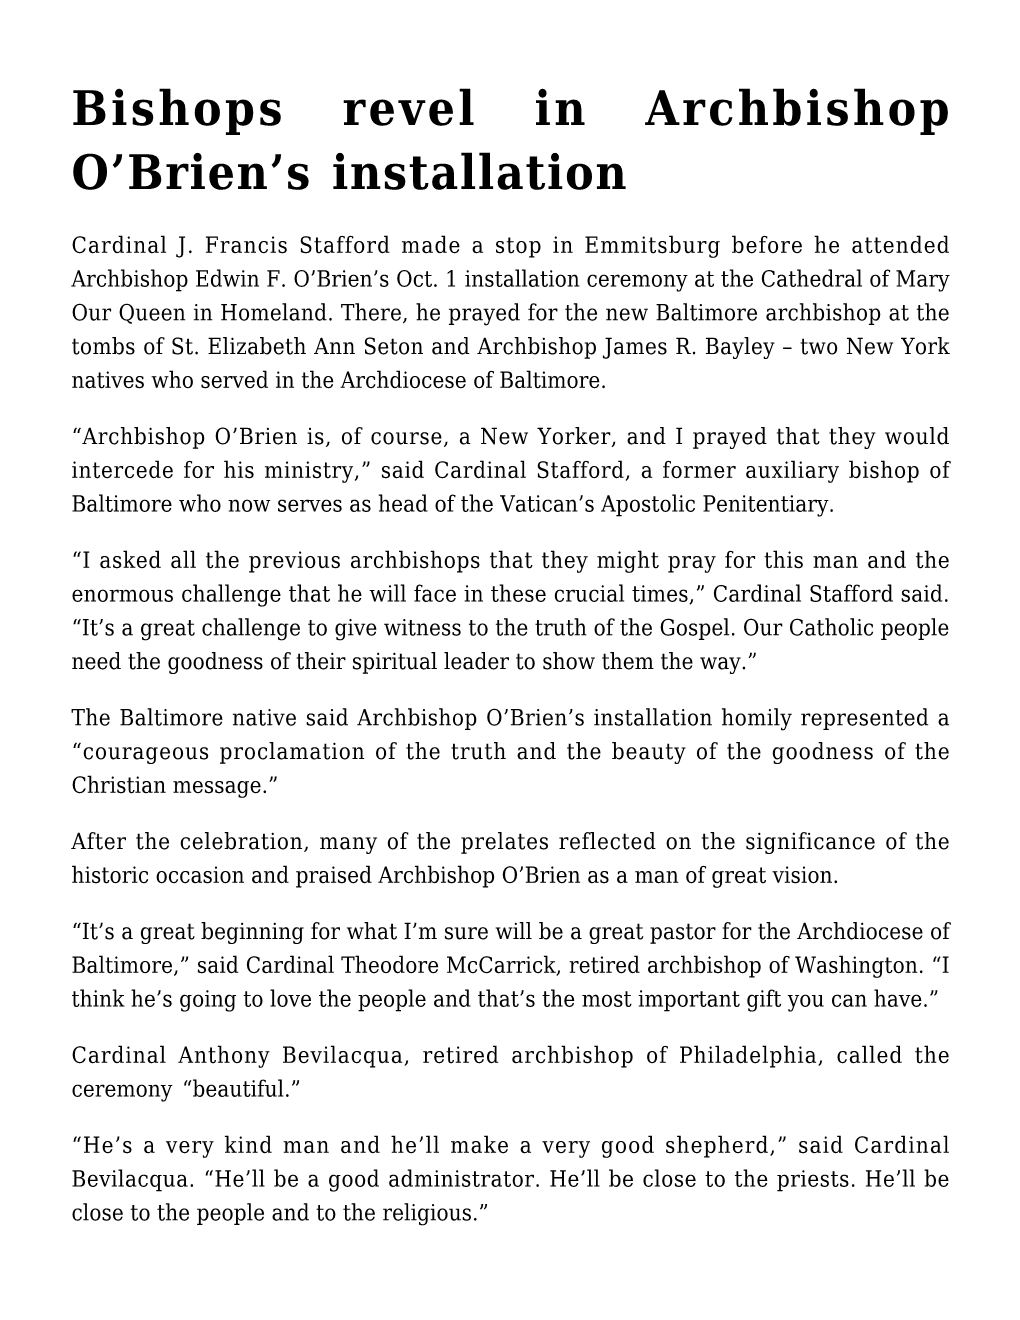 Bishops Revel in Archbishop O'brien's Installation